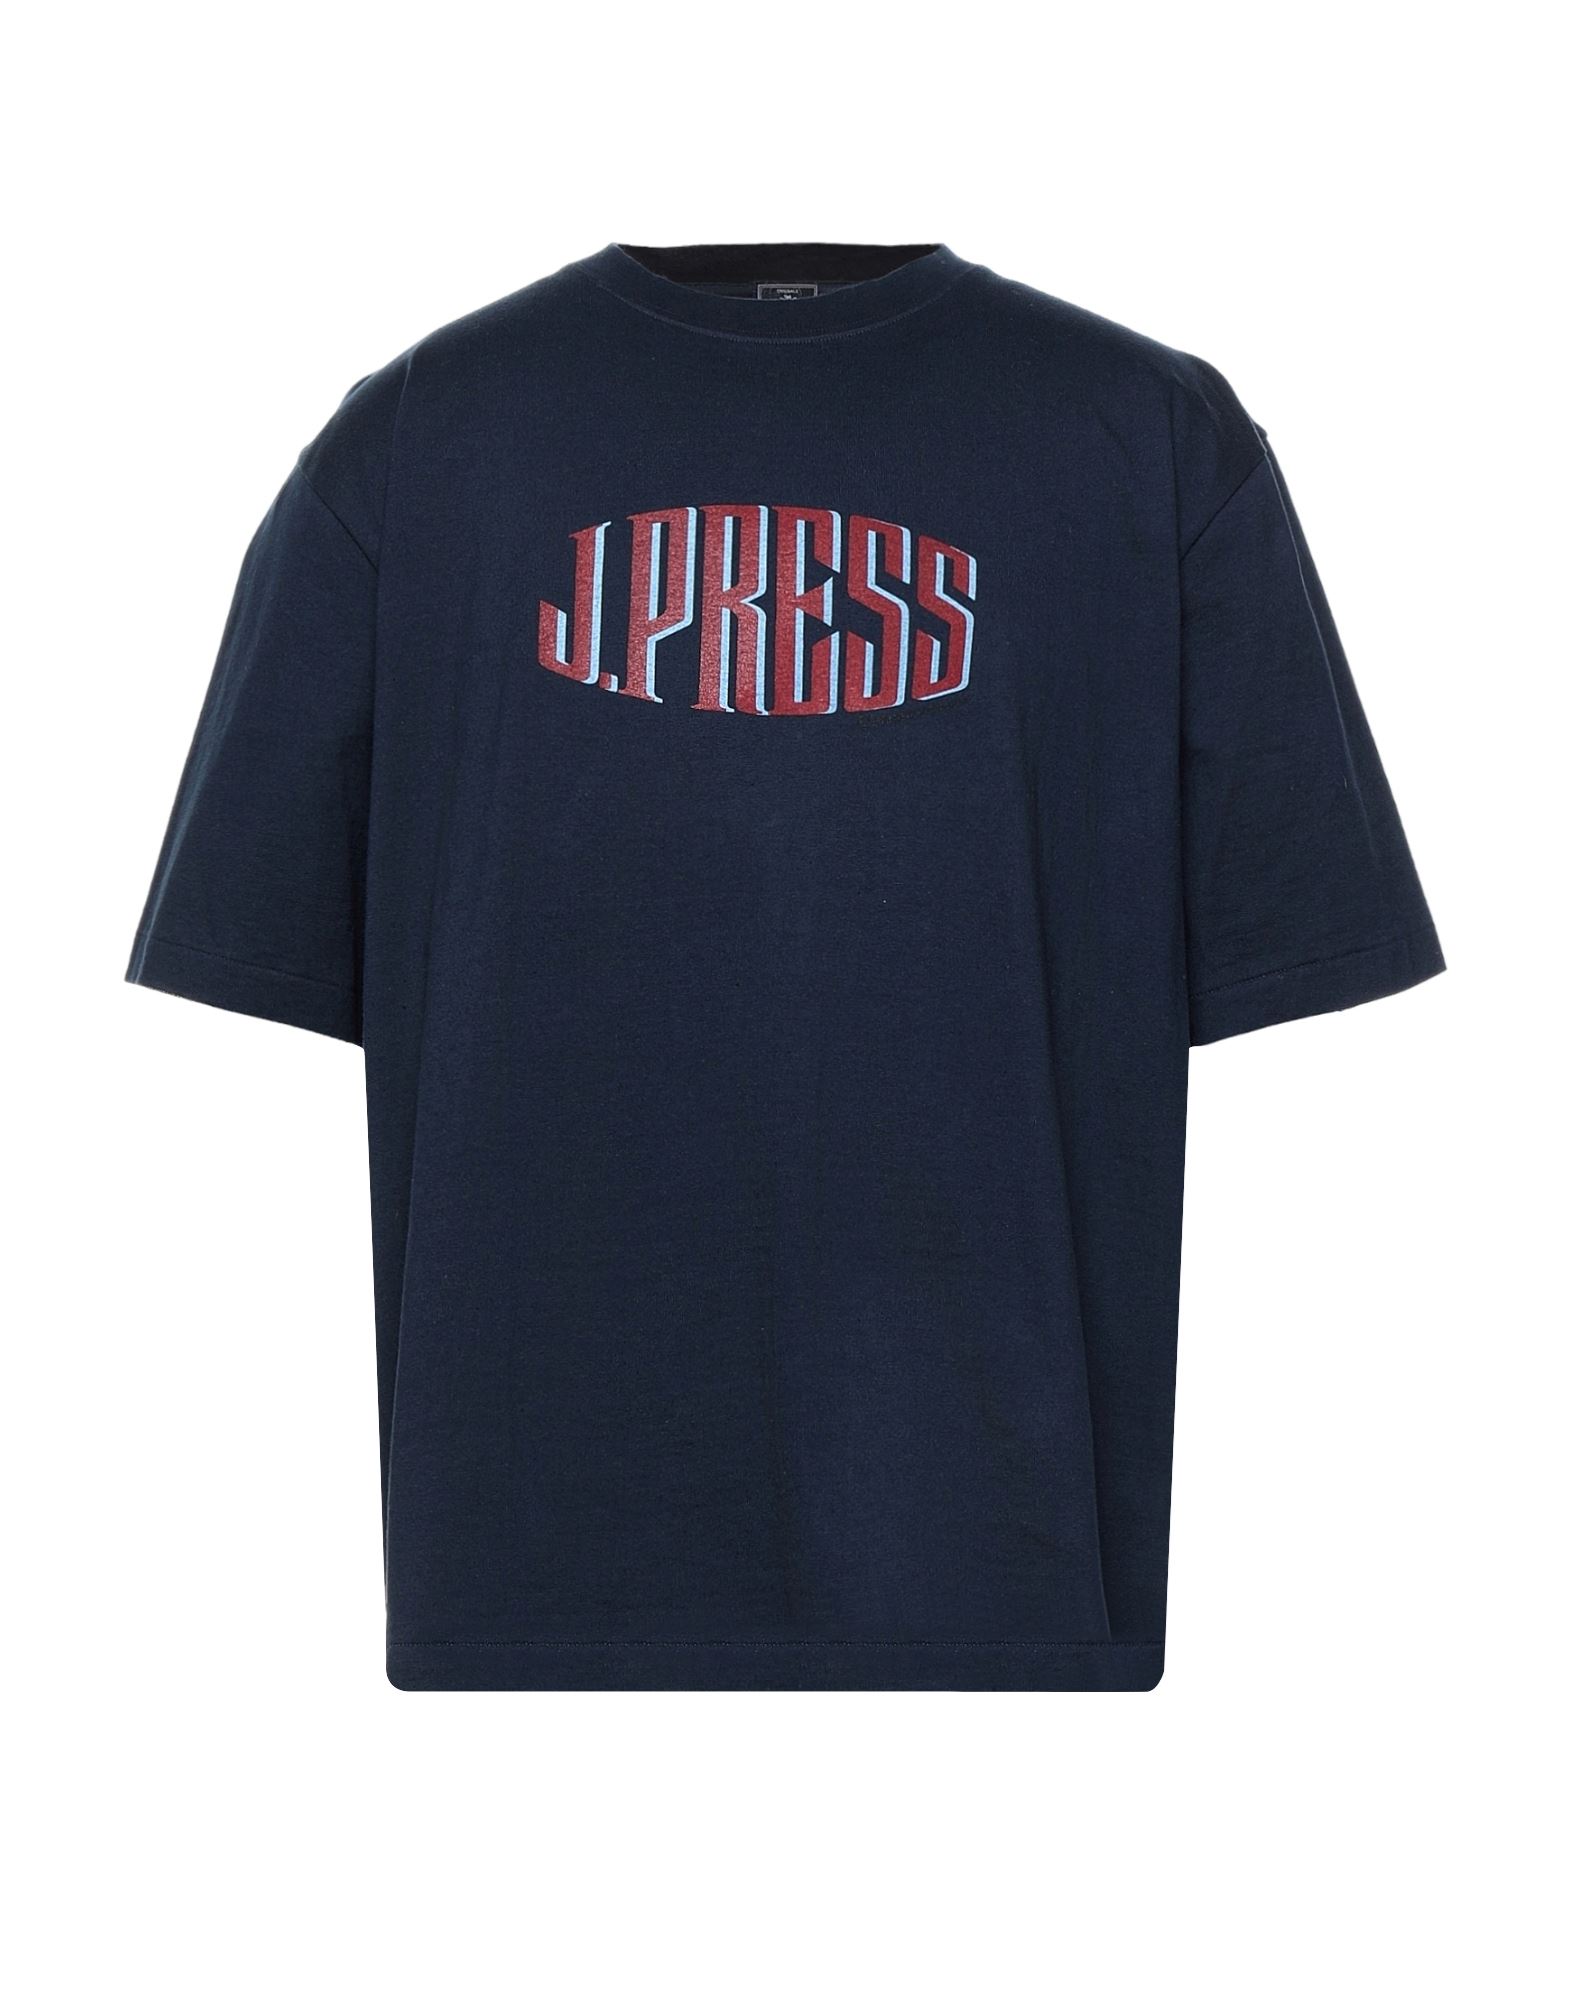 J.PRESS T-shirts